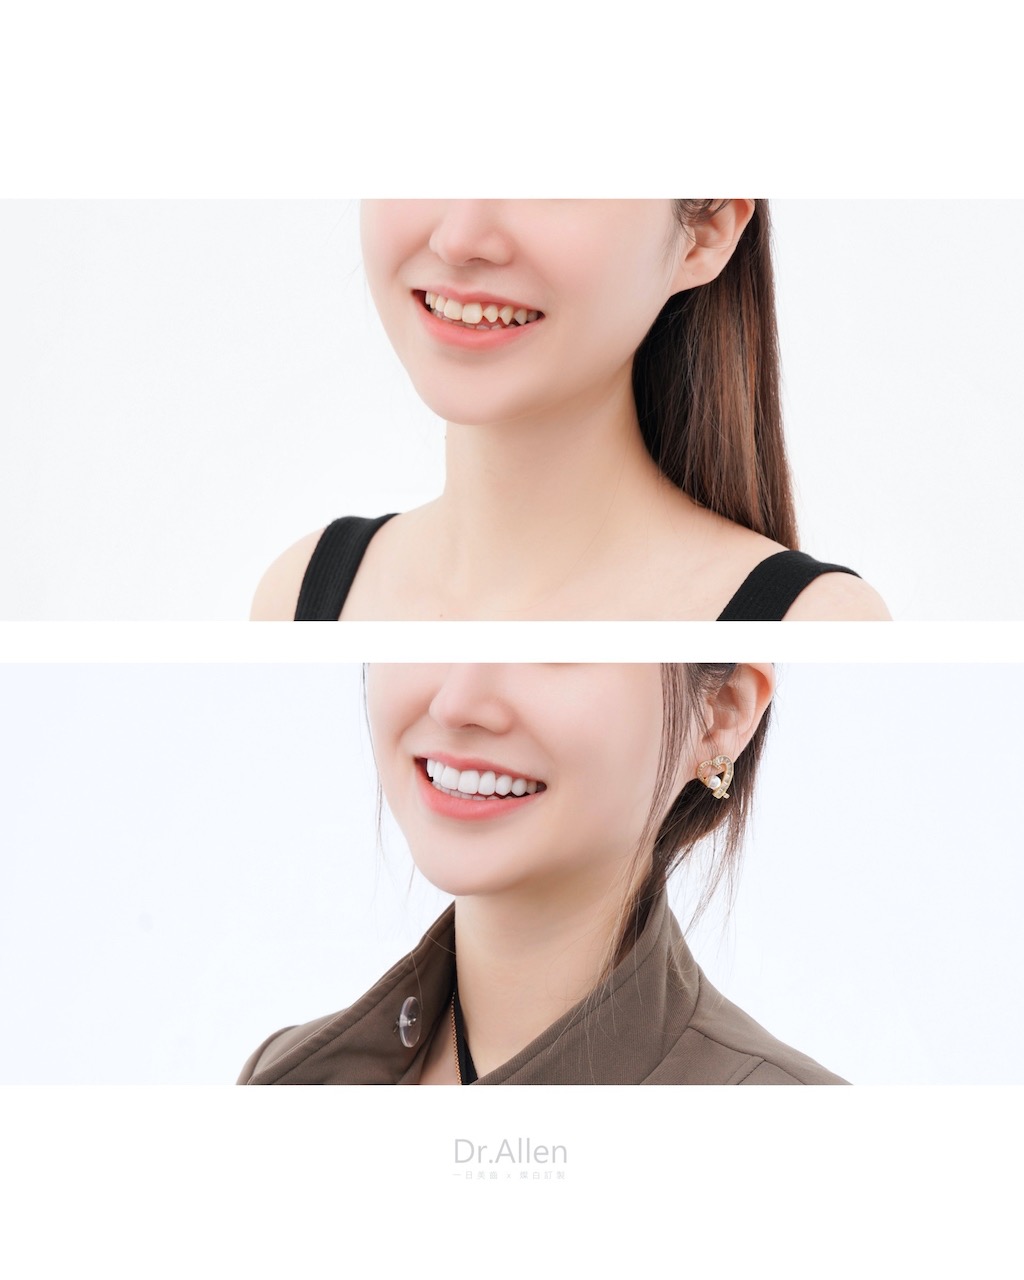 陶瓷貼片-牙齒形狀尖-牙齒黃-療程前後笑容比較-吳國綸醫師-台中